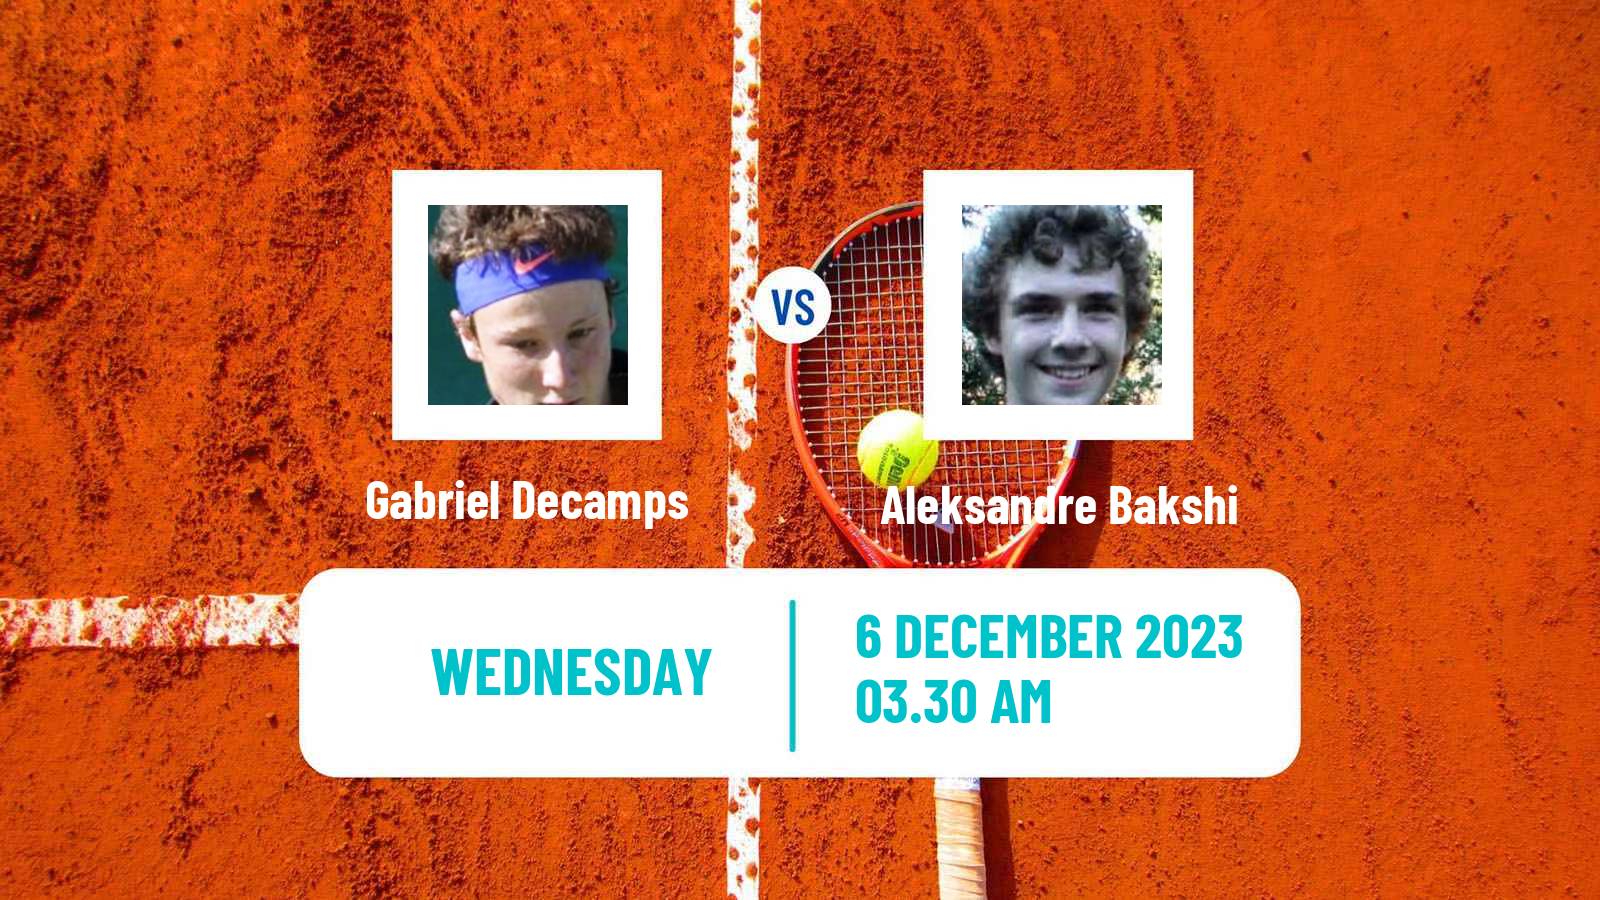 Tennis ITF M15 Zahra 2 Men Gabriel Decamps - Aleksandre Bakshi